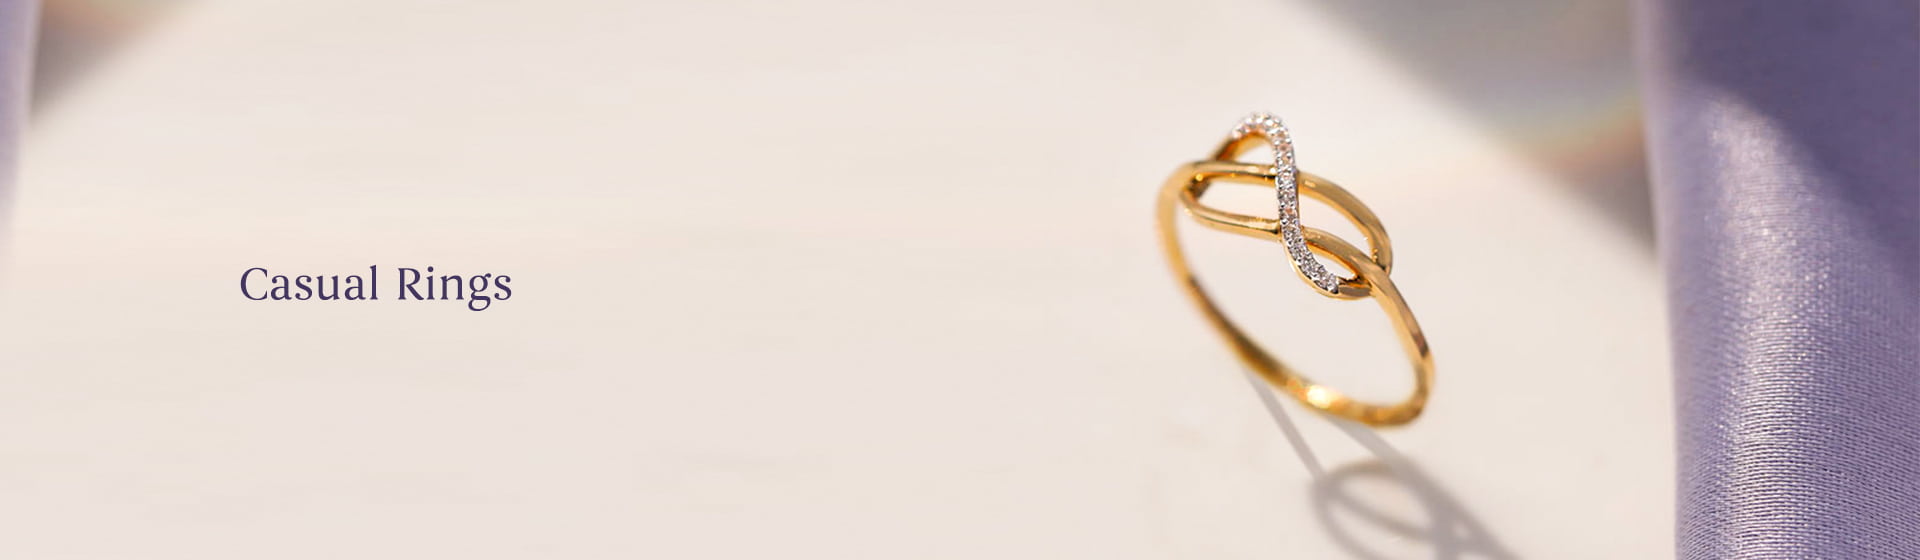 Gold & diamond casual Rings for men & women